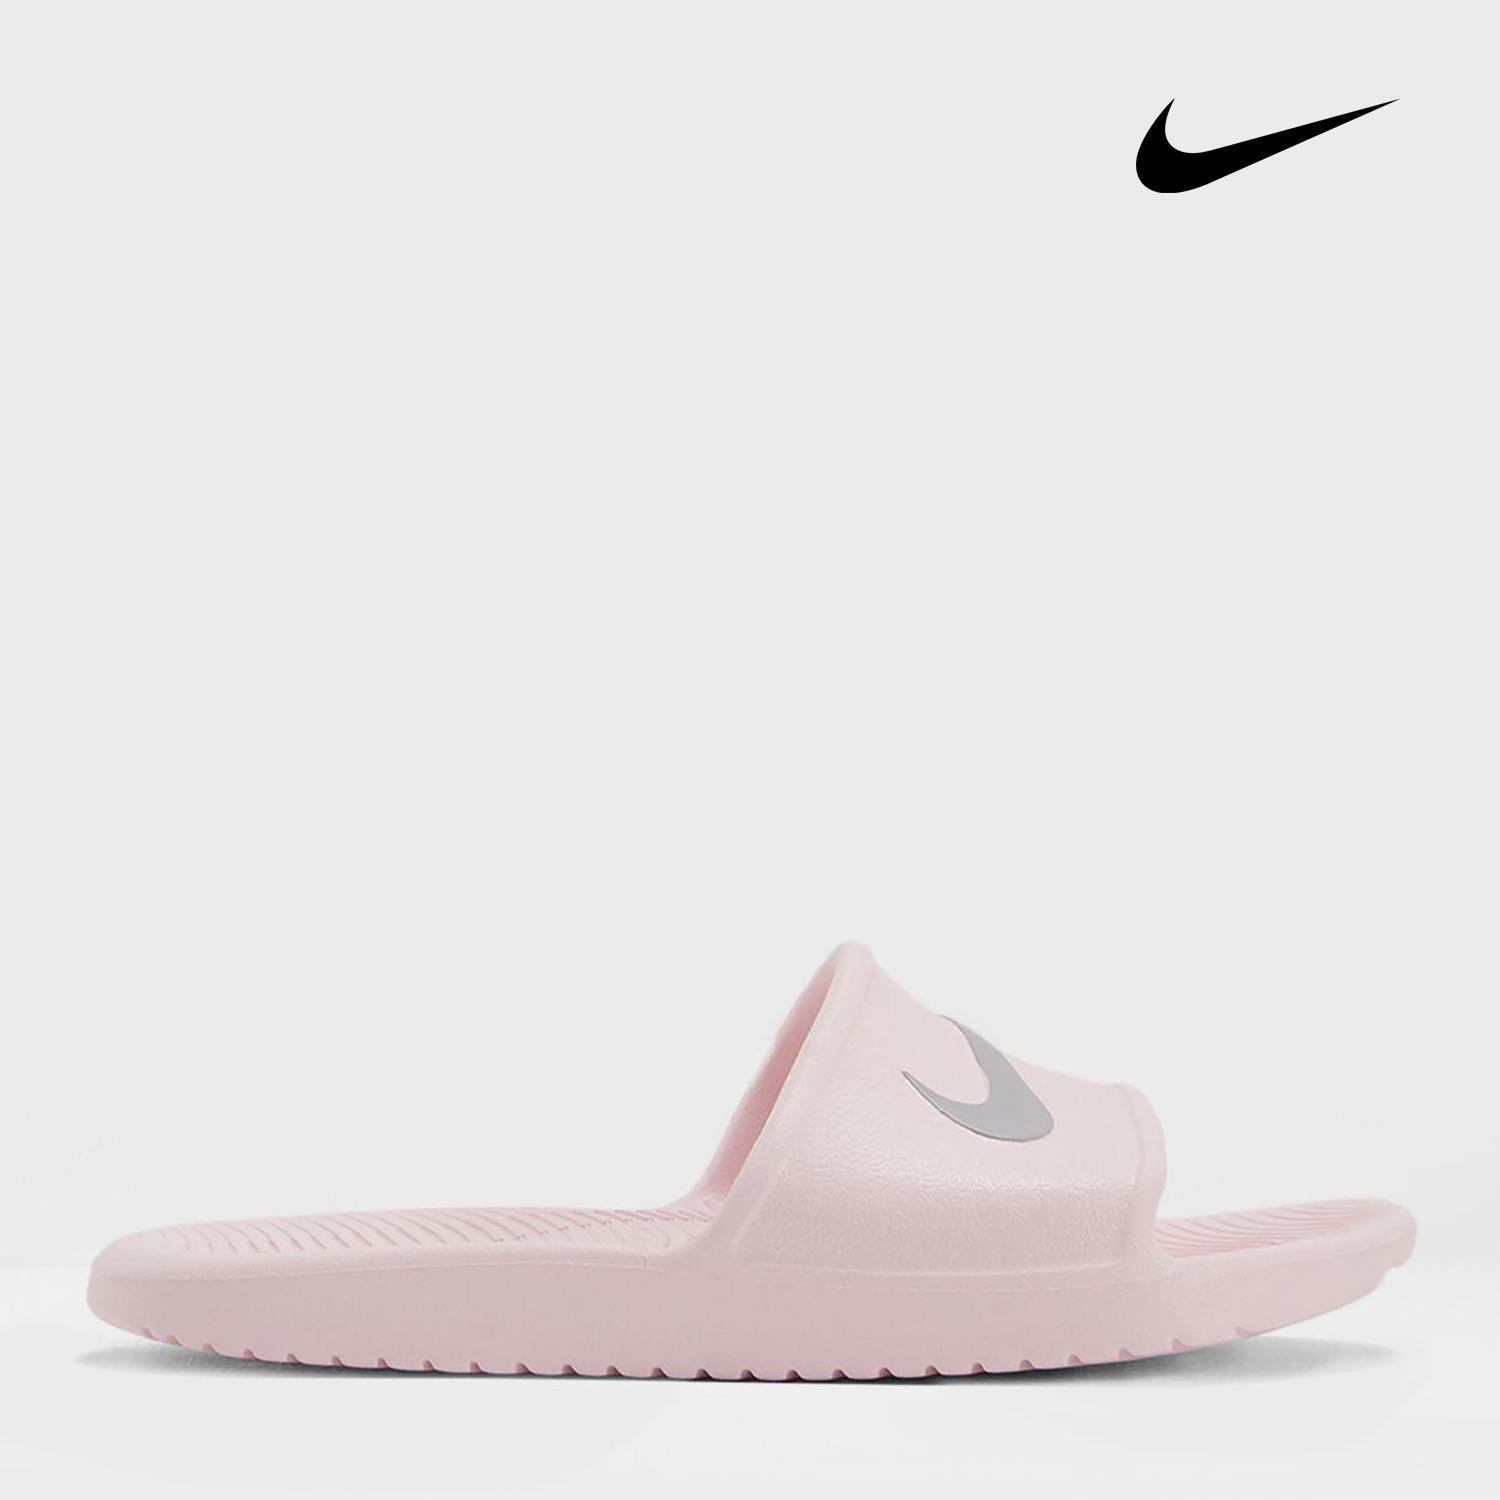 Premier] Nike - Dép Thể Thao Nữ Wmns Kawa Shower Nsw Woman Footwear  SS19-832655 